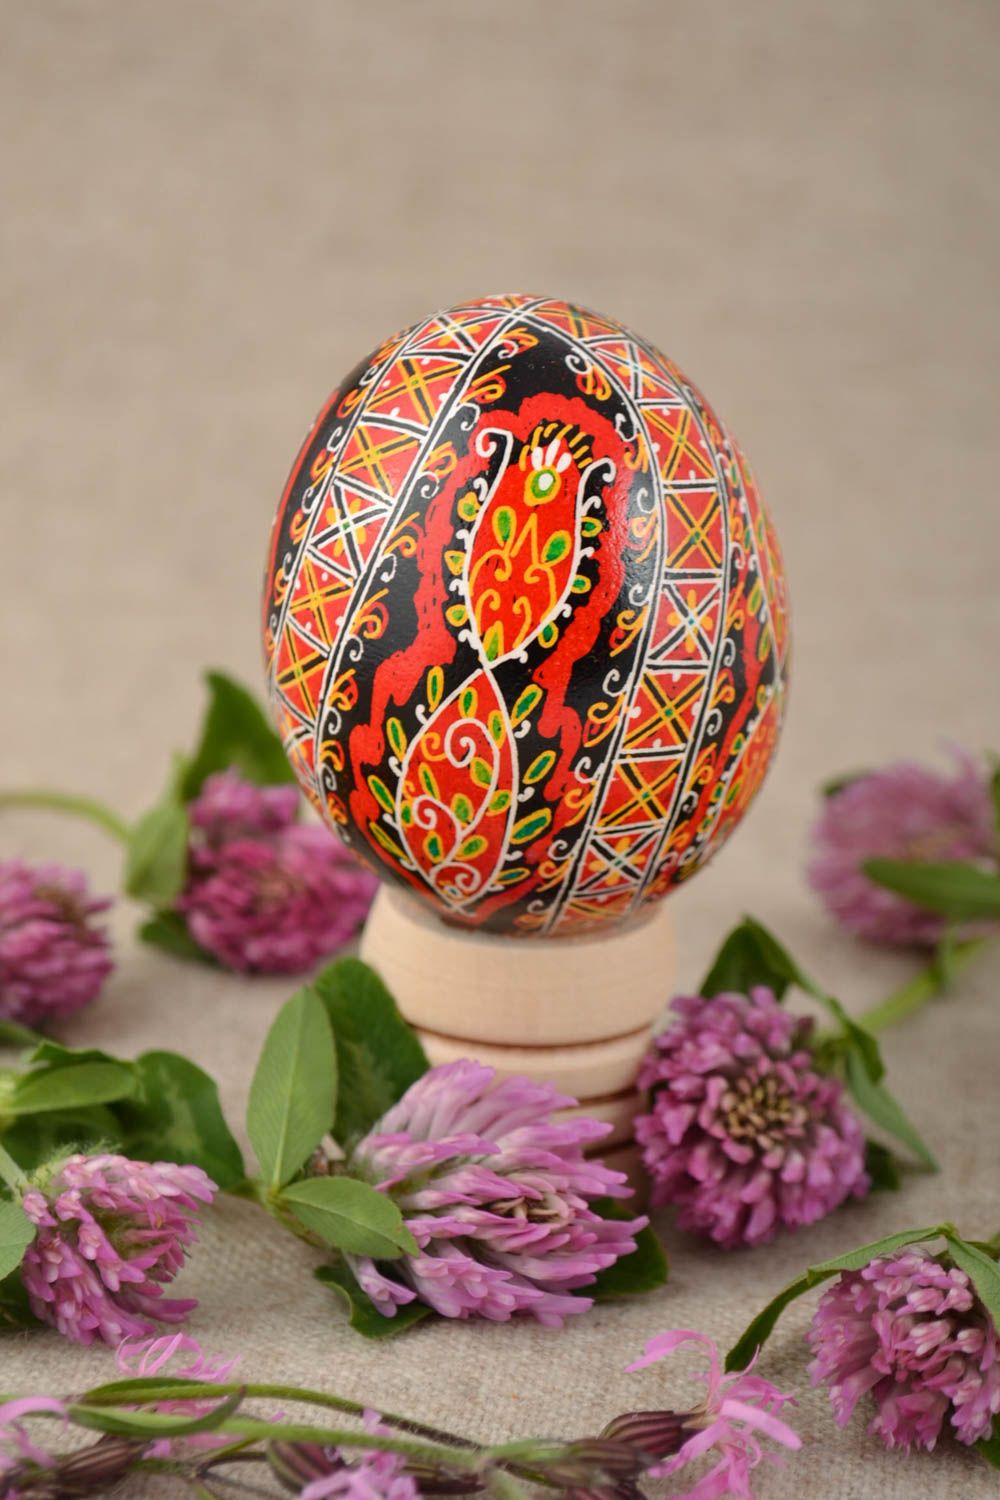 Расписное яйцо красивое в красных и черных тонах подарок на Пасху ручной работы  фото 1